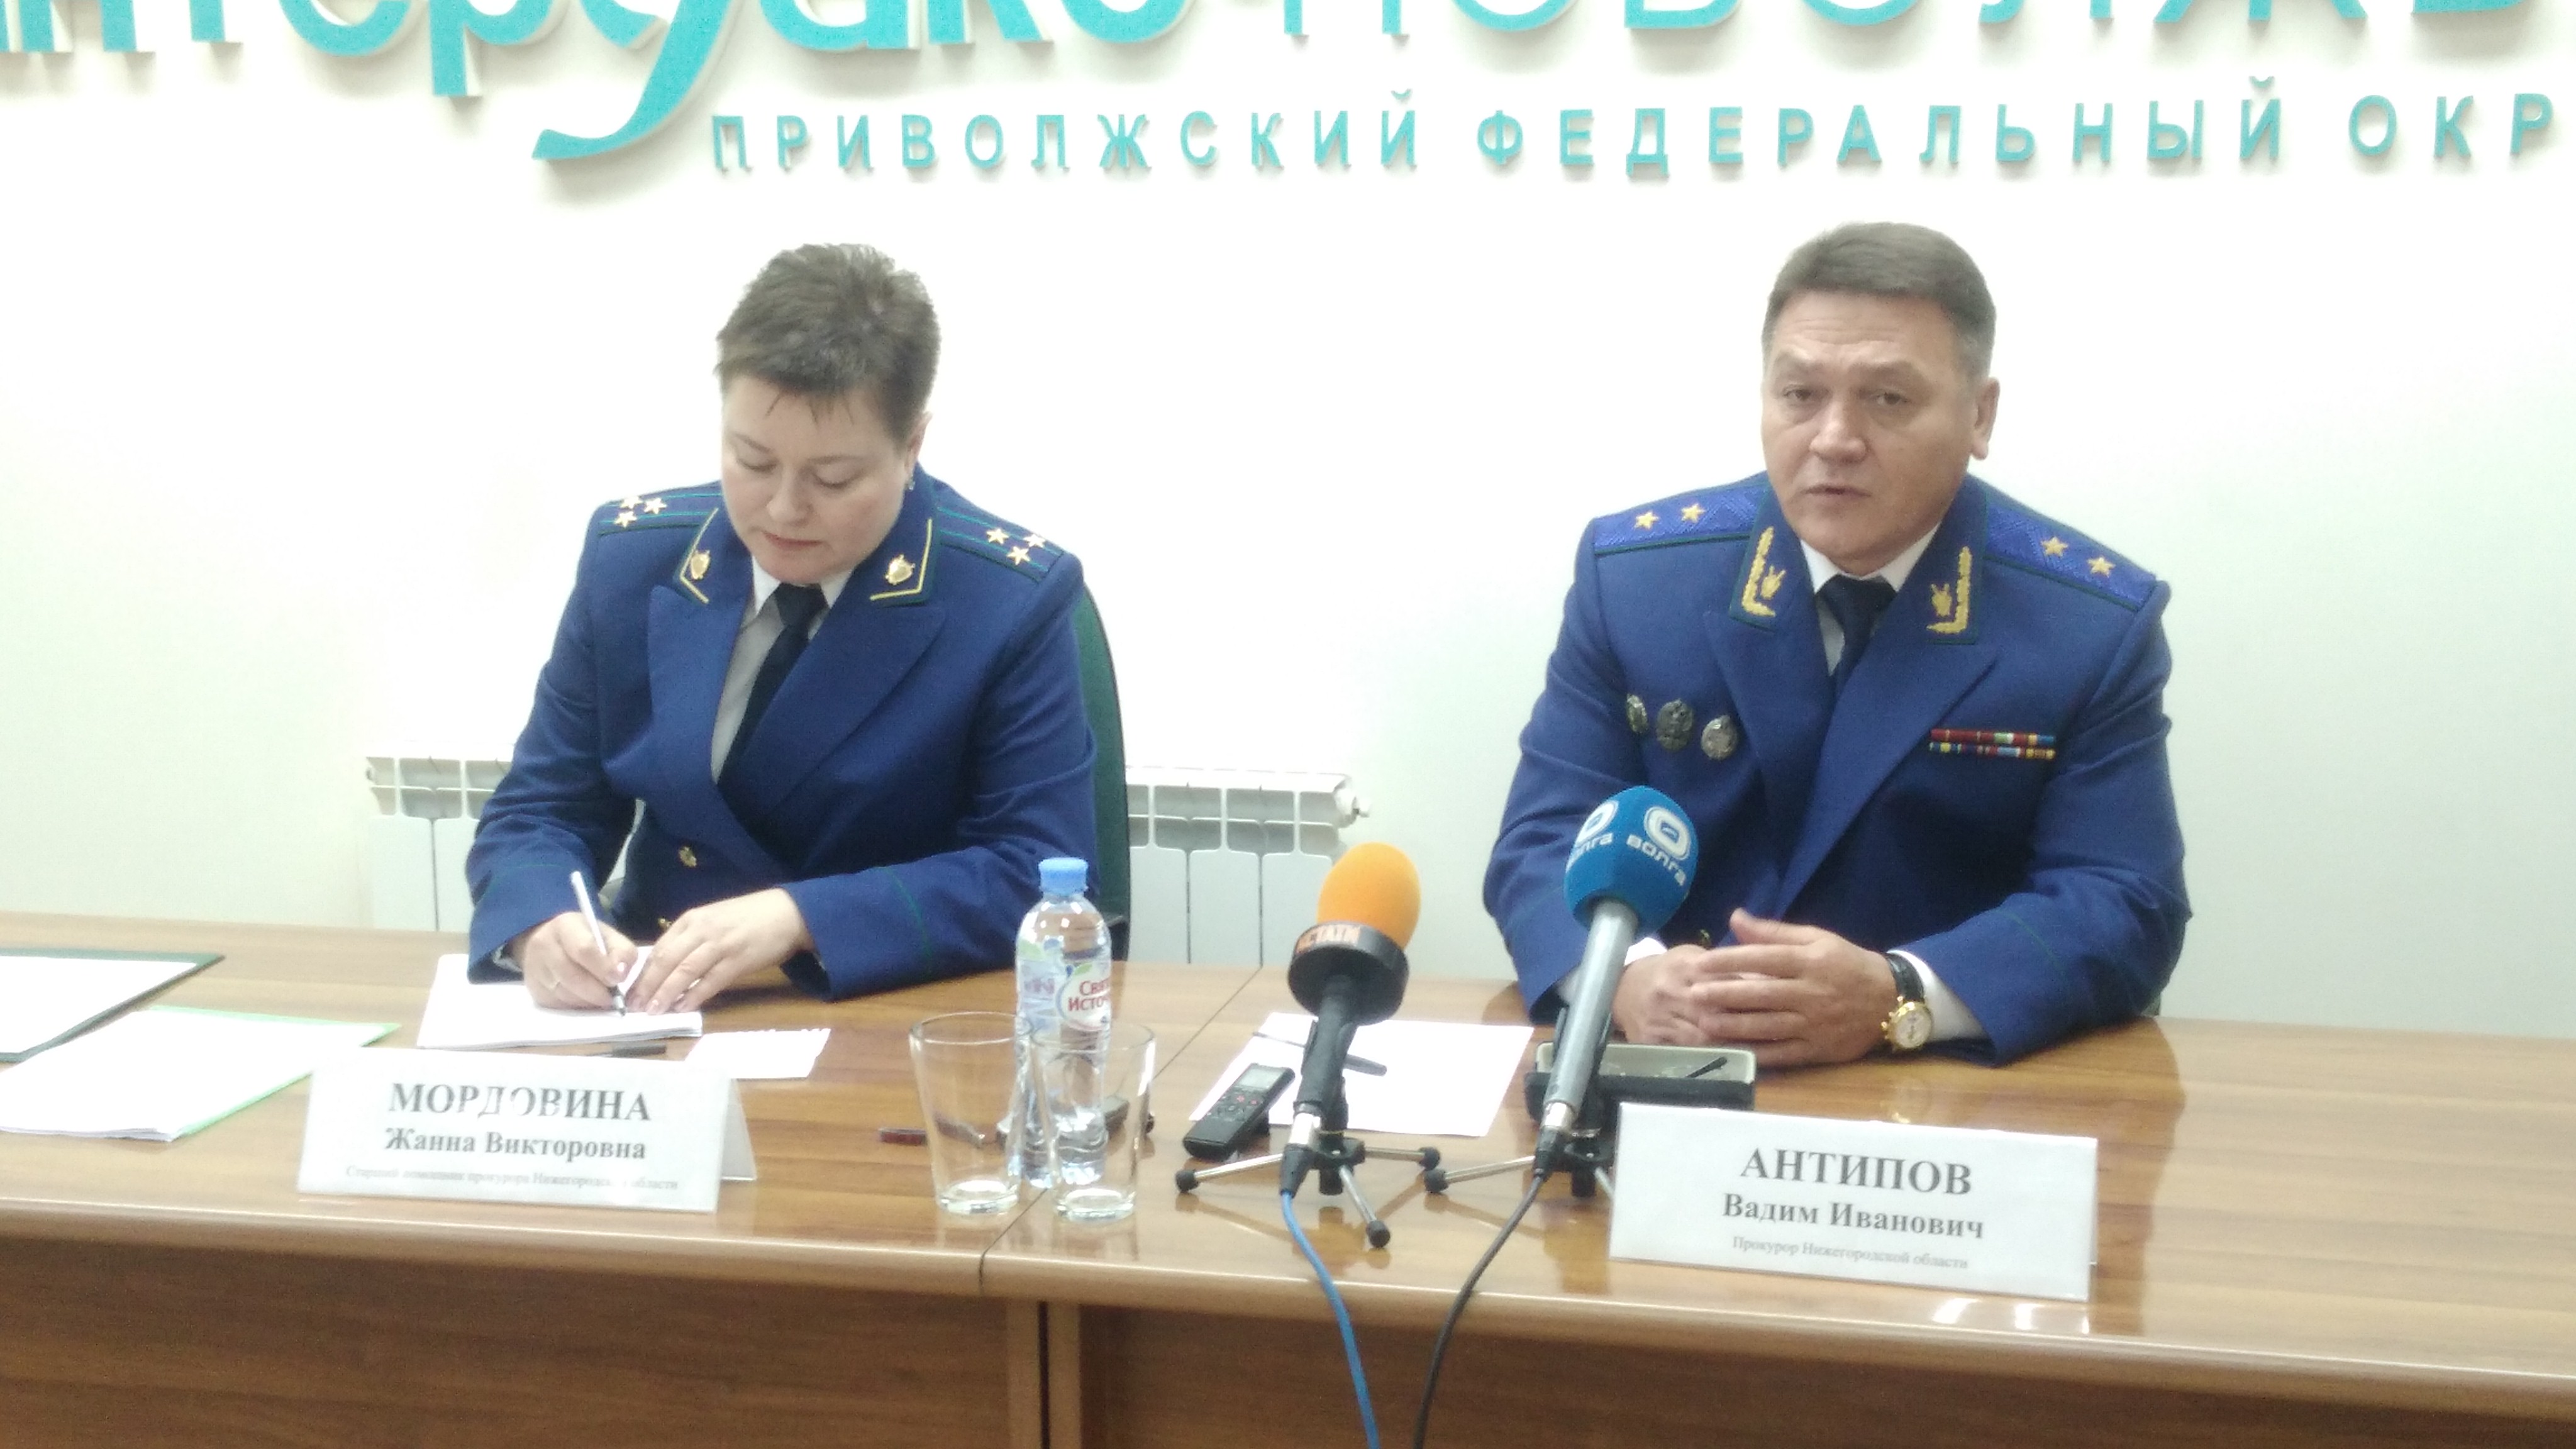 Прокуратура насчитала 81 проблемную новостройку в Нижегородской области  - фото 1